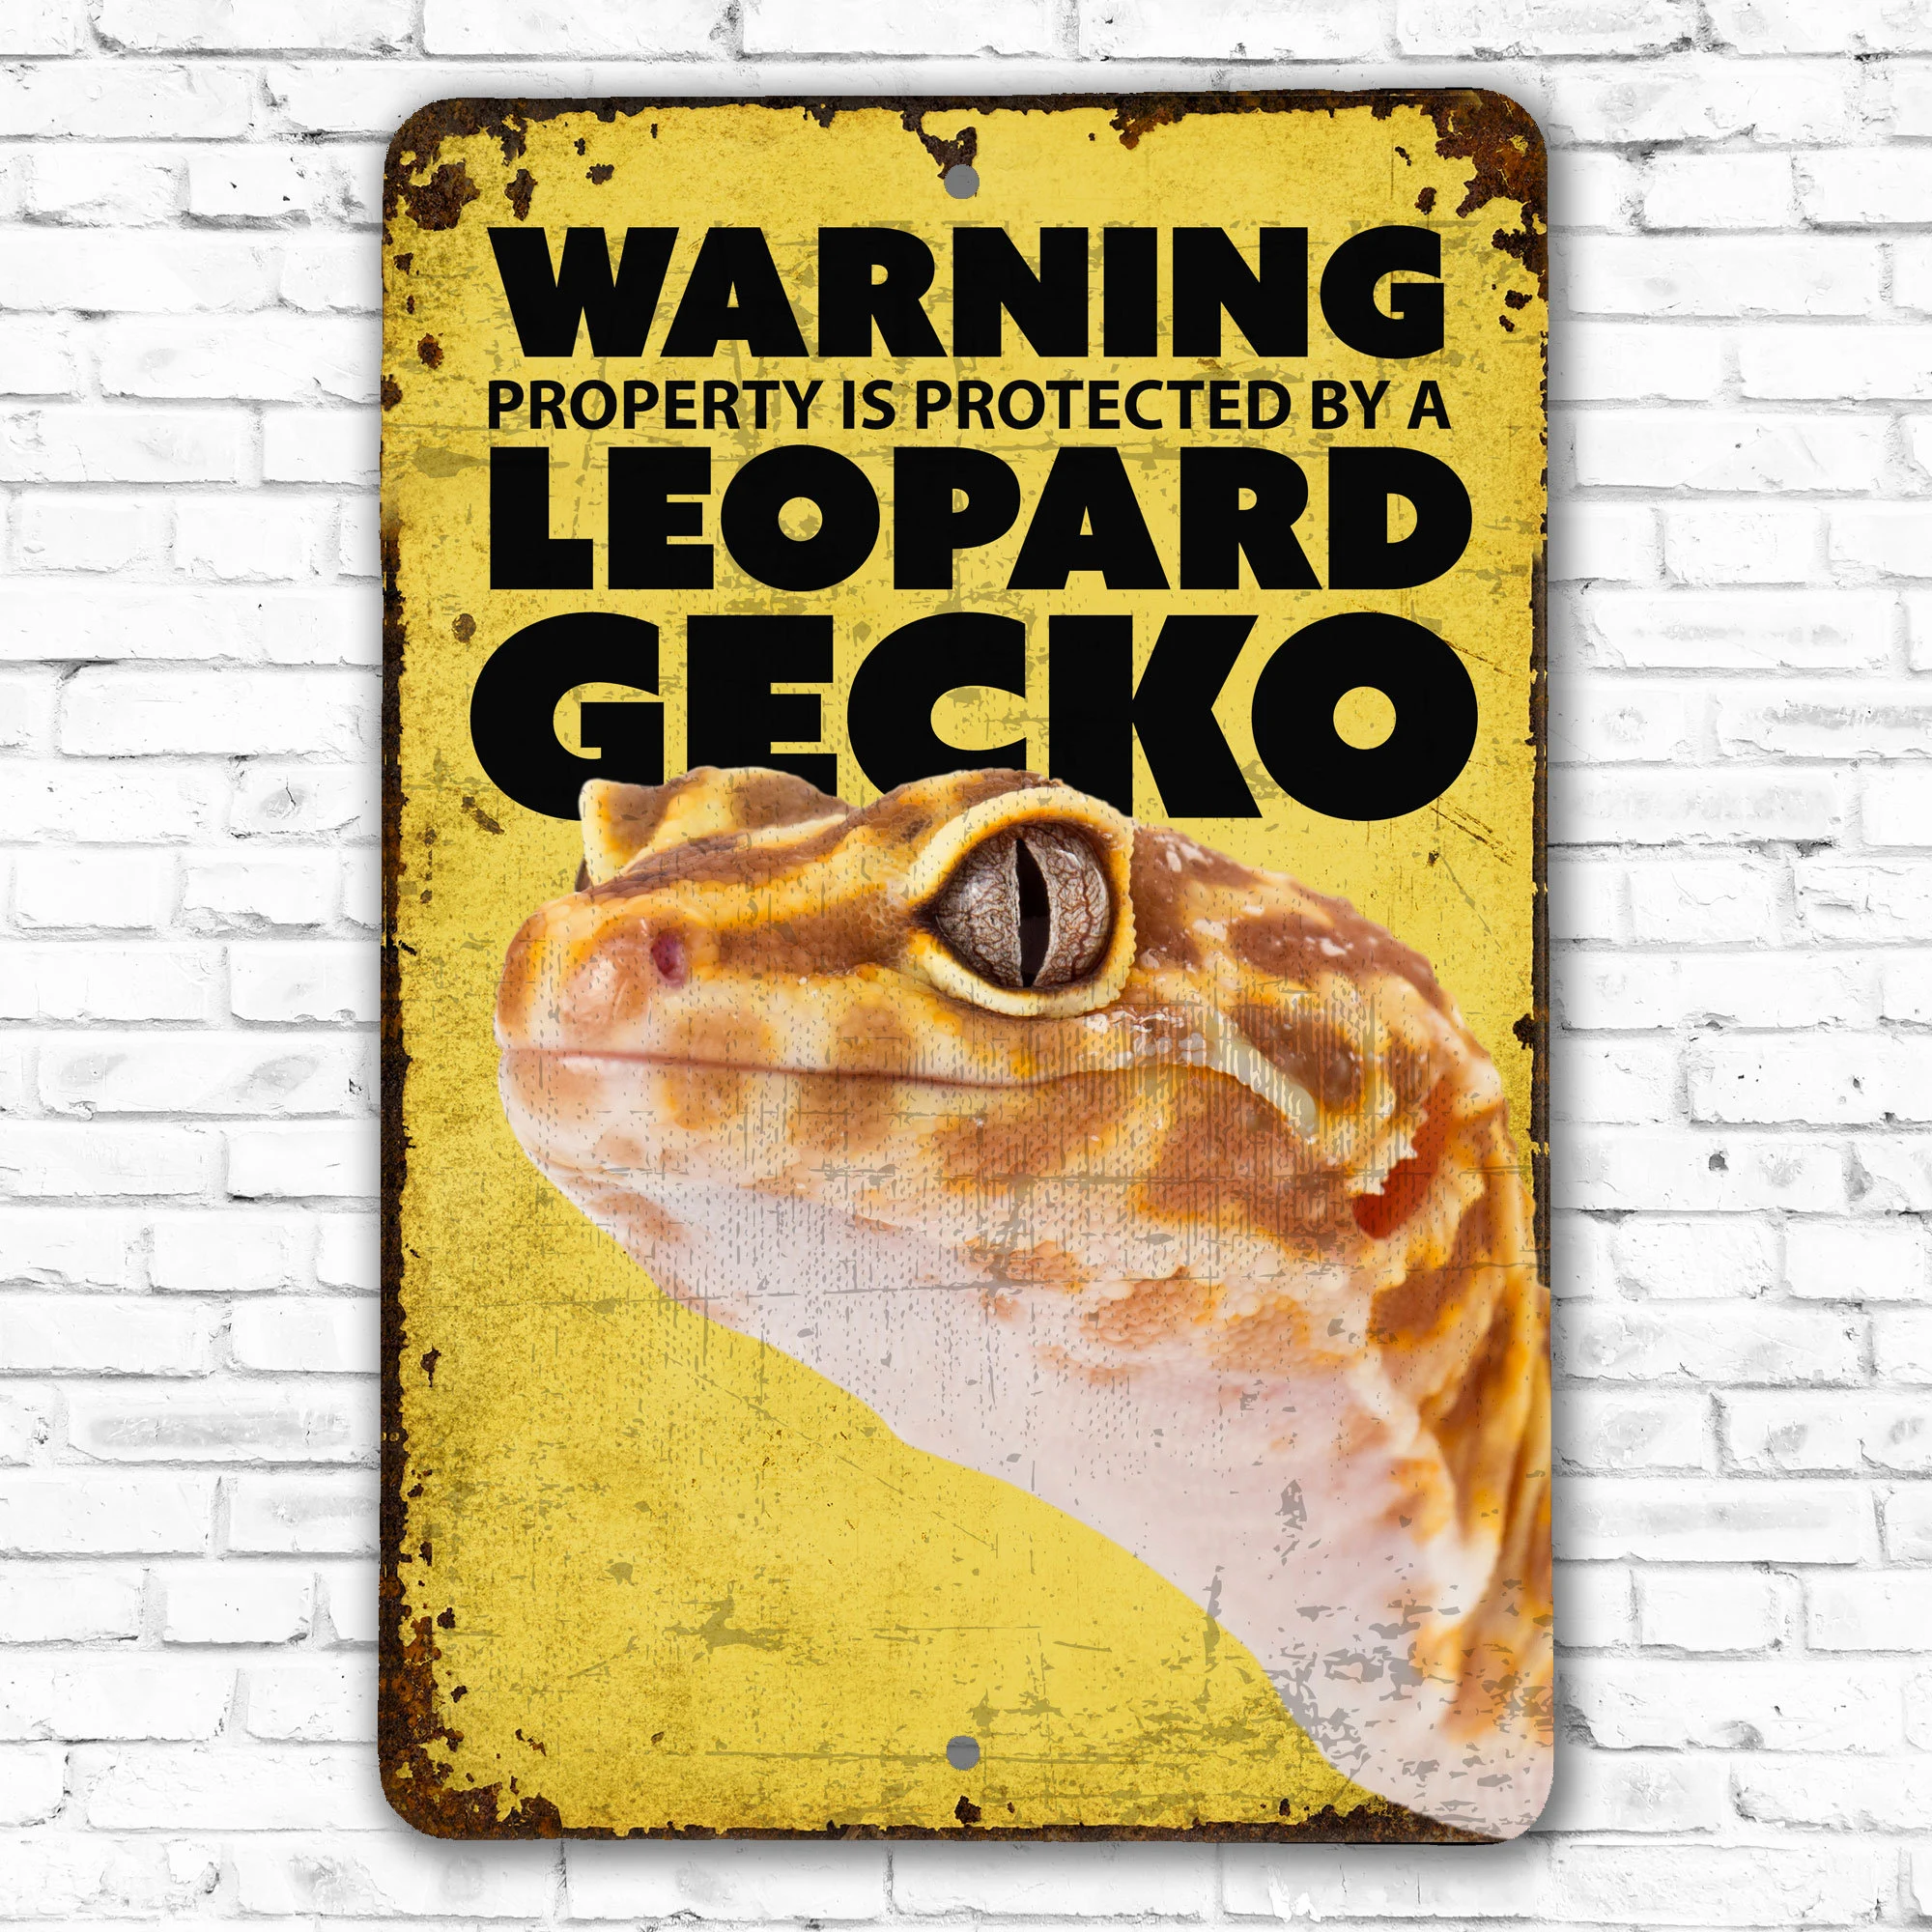 Leopard gecko soaking — warning signs